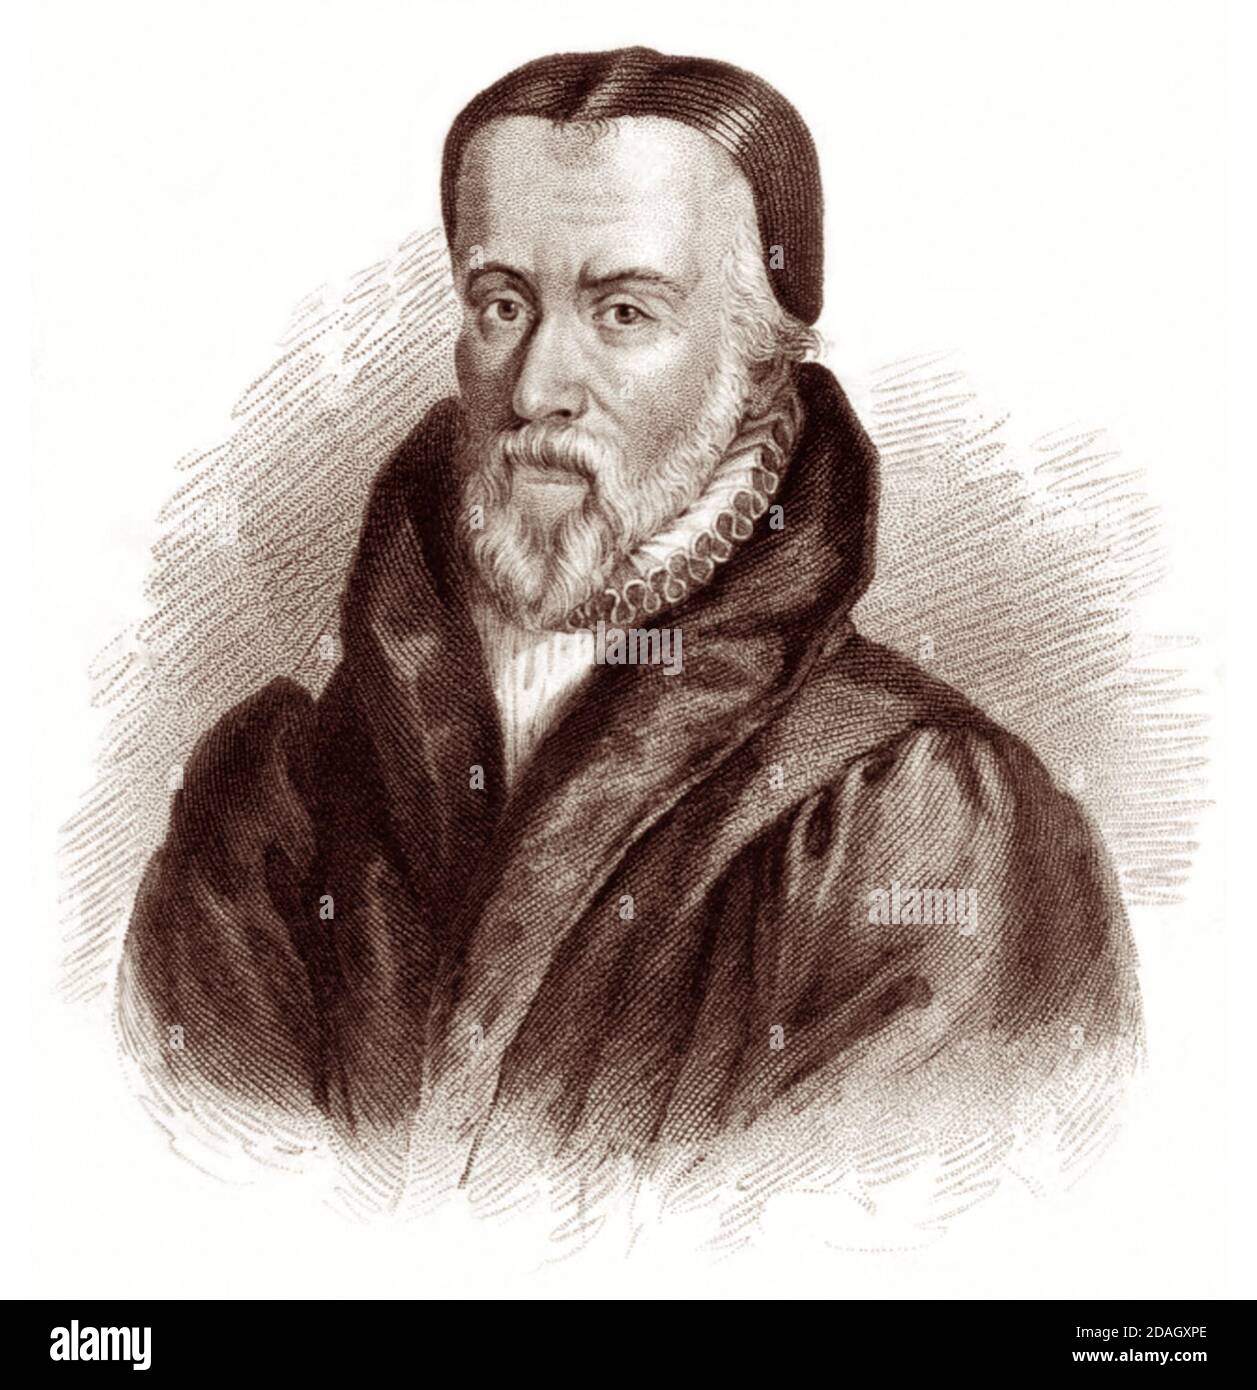 William Tyndale (1494 - 1536) era un studioso inglese e protagonista della riforma protestante che, sfidando la Chiesa Cattolica e il governo inglese, tradotto la Bibbia in lingua inglese, per la quale egli è stato strangolato e bruciato sul rogo nel 1536. Foto Stock